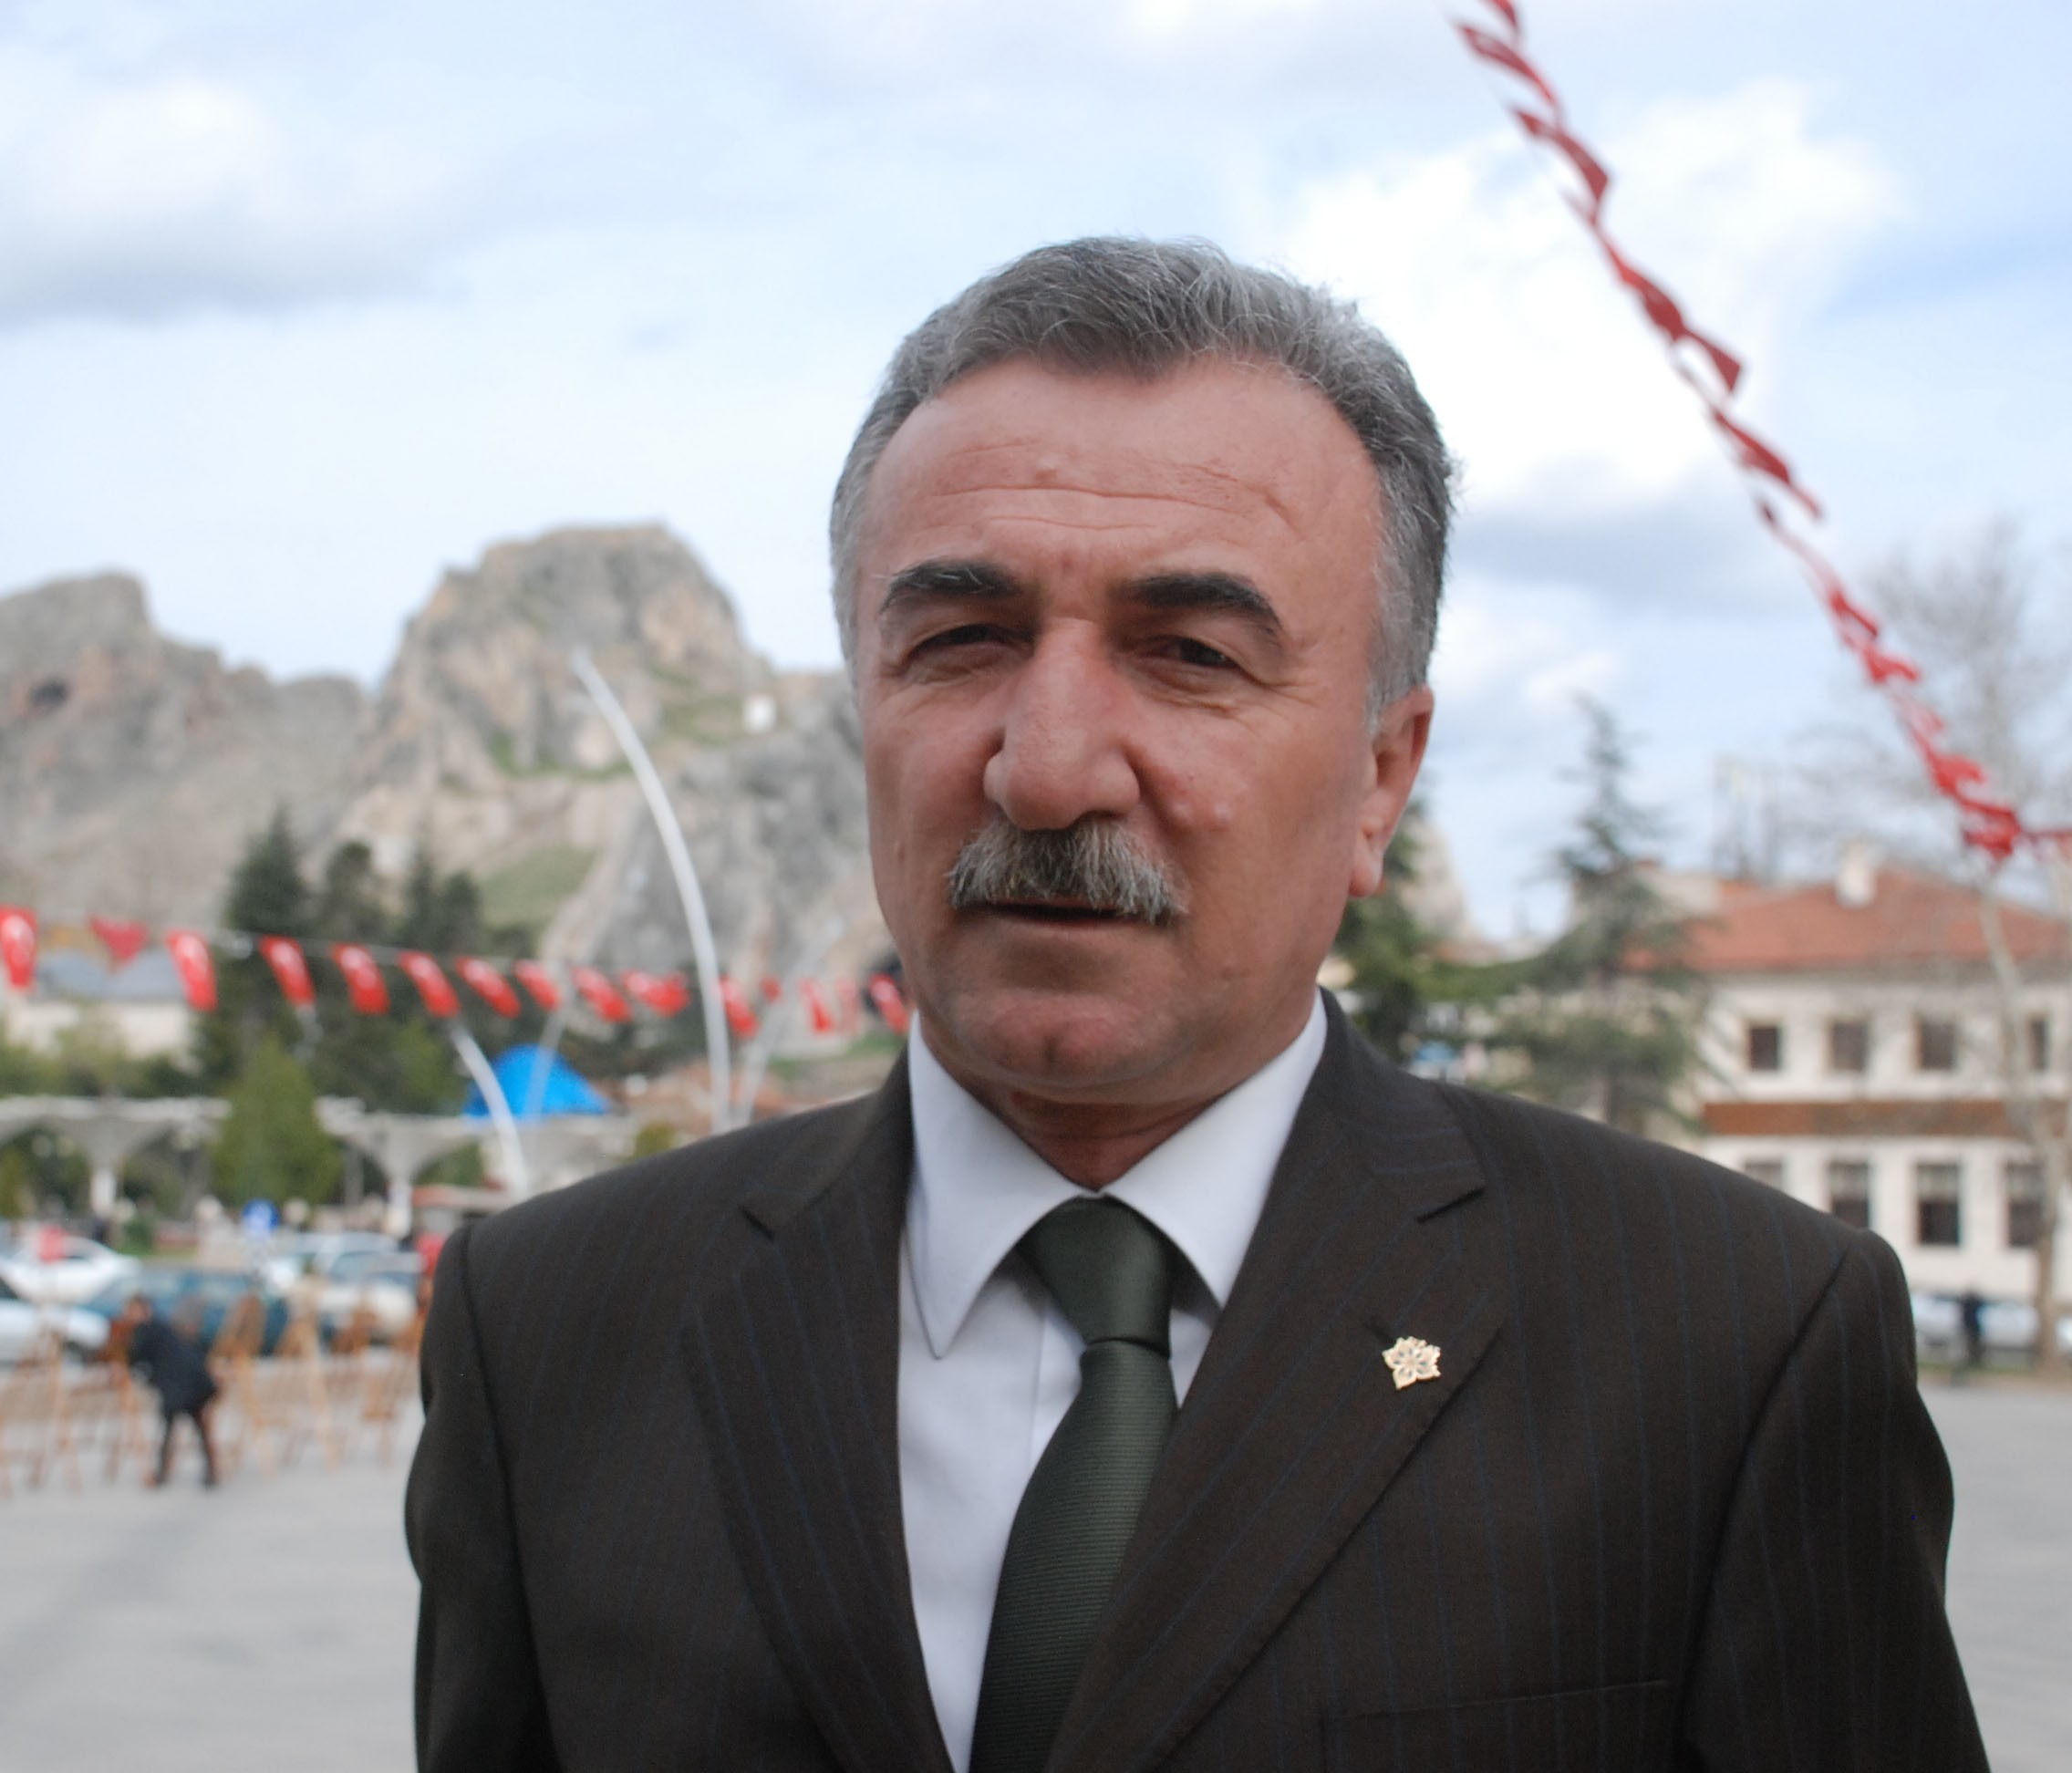 Tokat İl Kültür ve Turizm Müdürü Adem Çakır Görevden Alındı